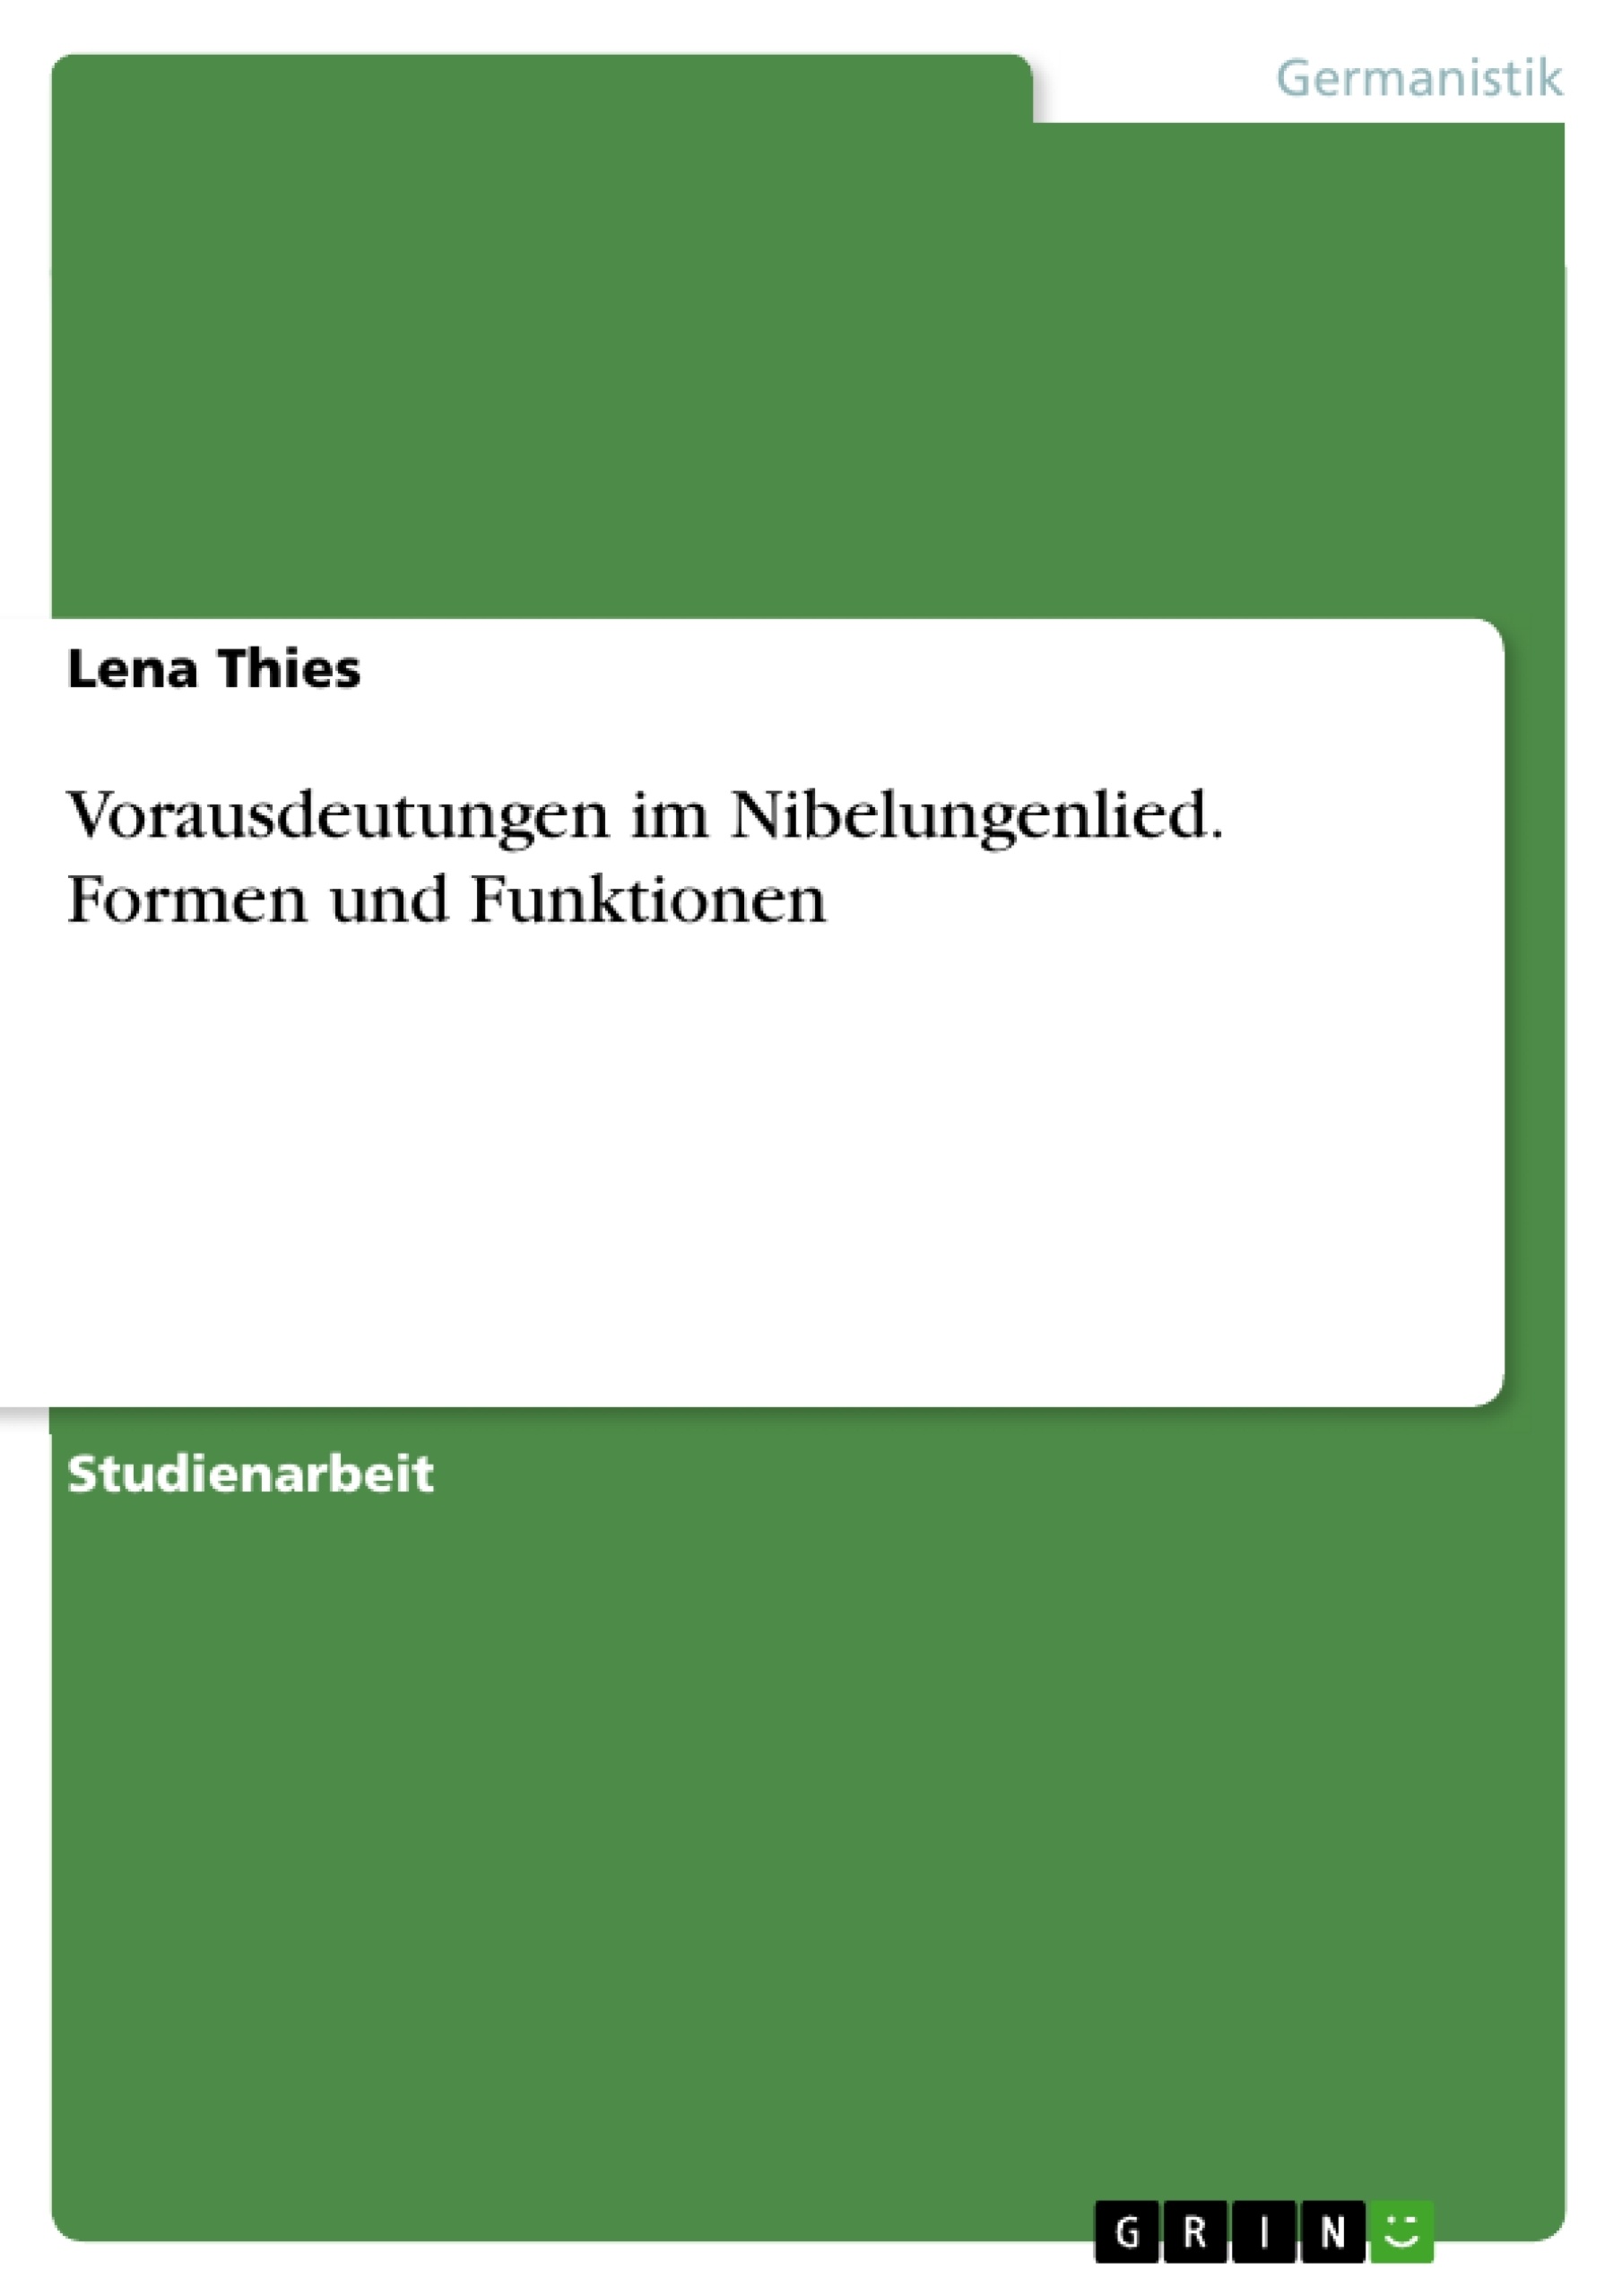 Title: Vorausdeutungen im Nibelungenlied. Formen und Funktionen